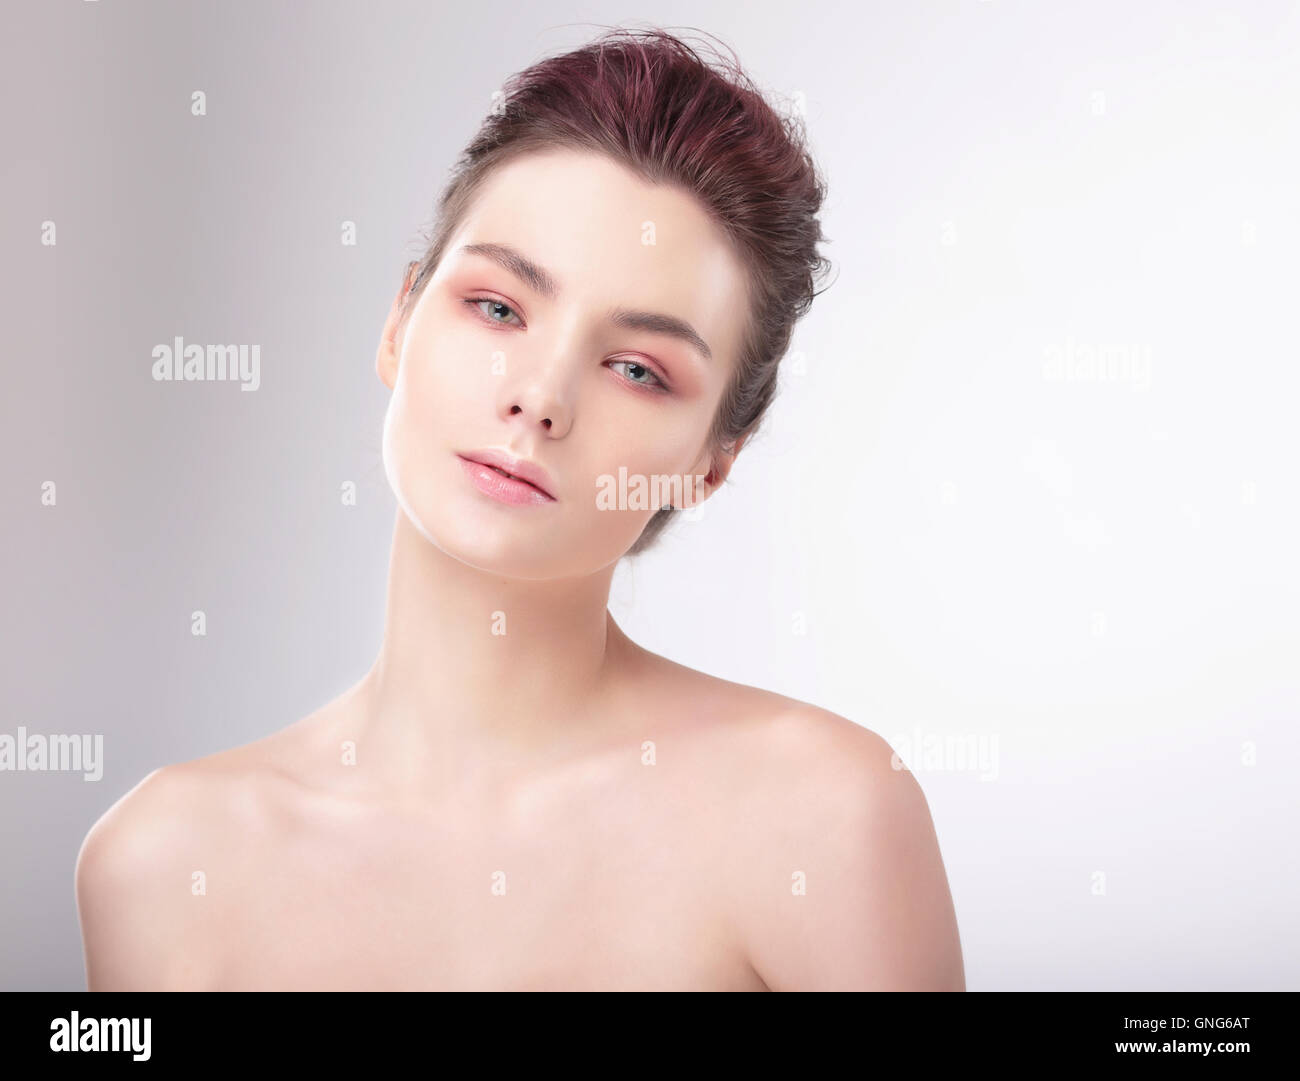 Retrato de mujer con una piel limpia. Natural, limpio y brillante. Foto de stock